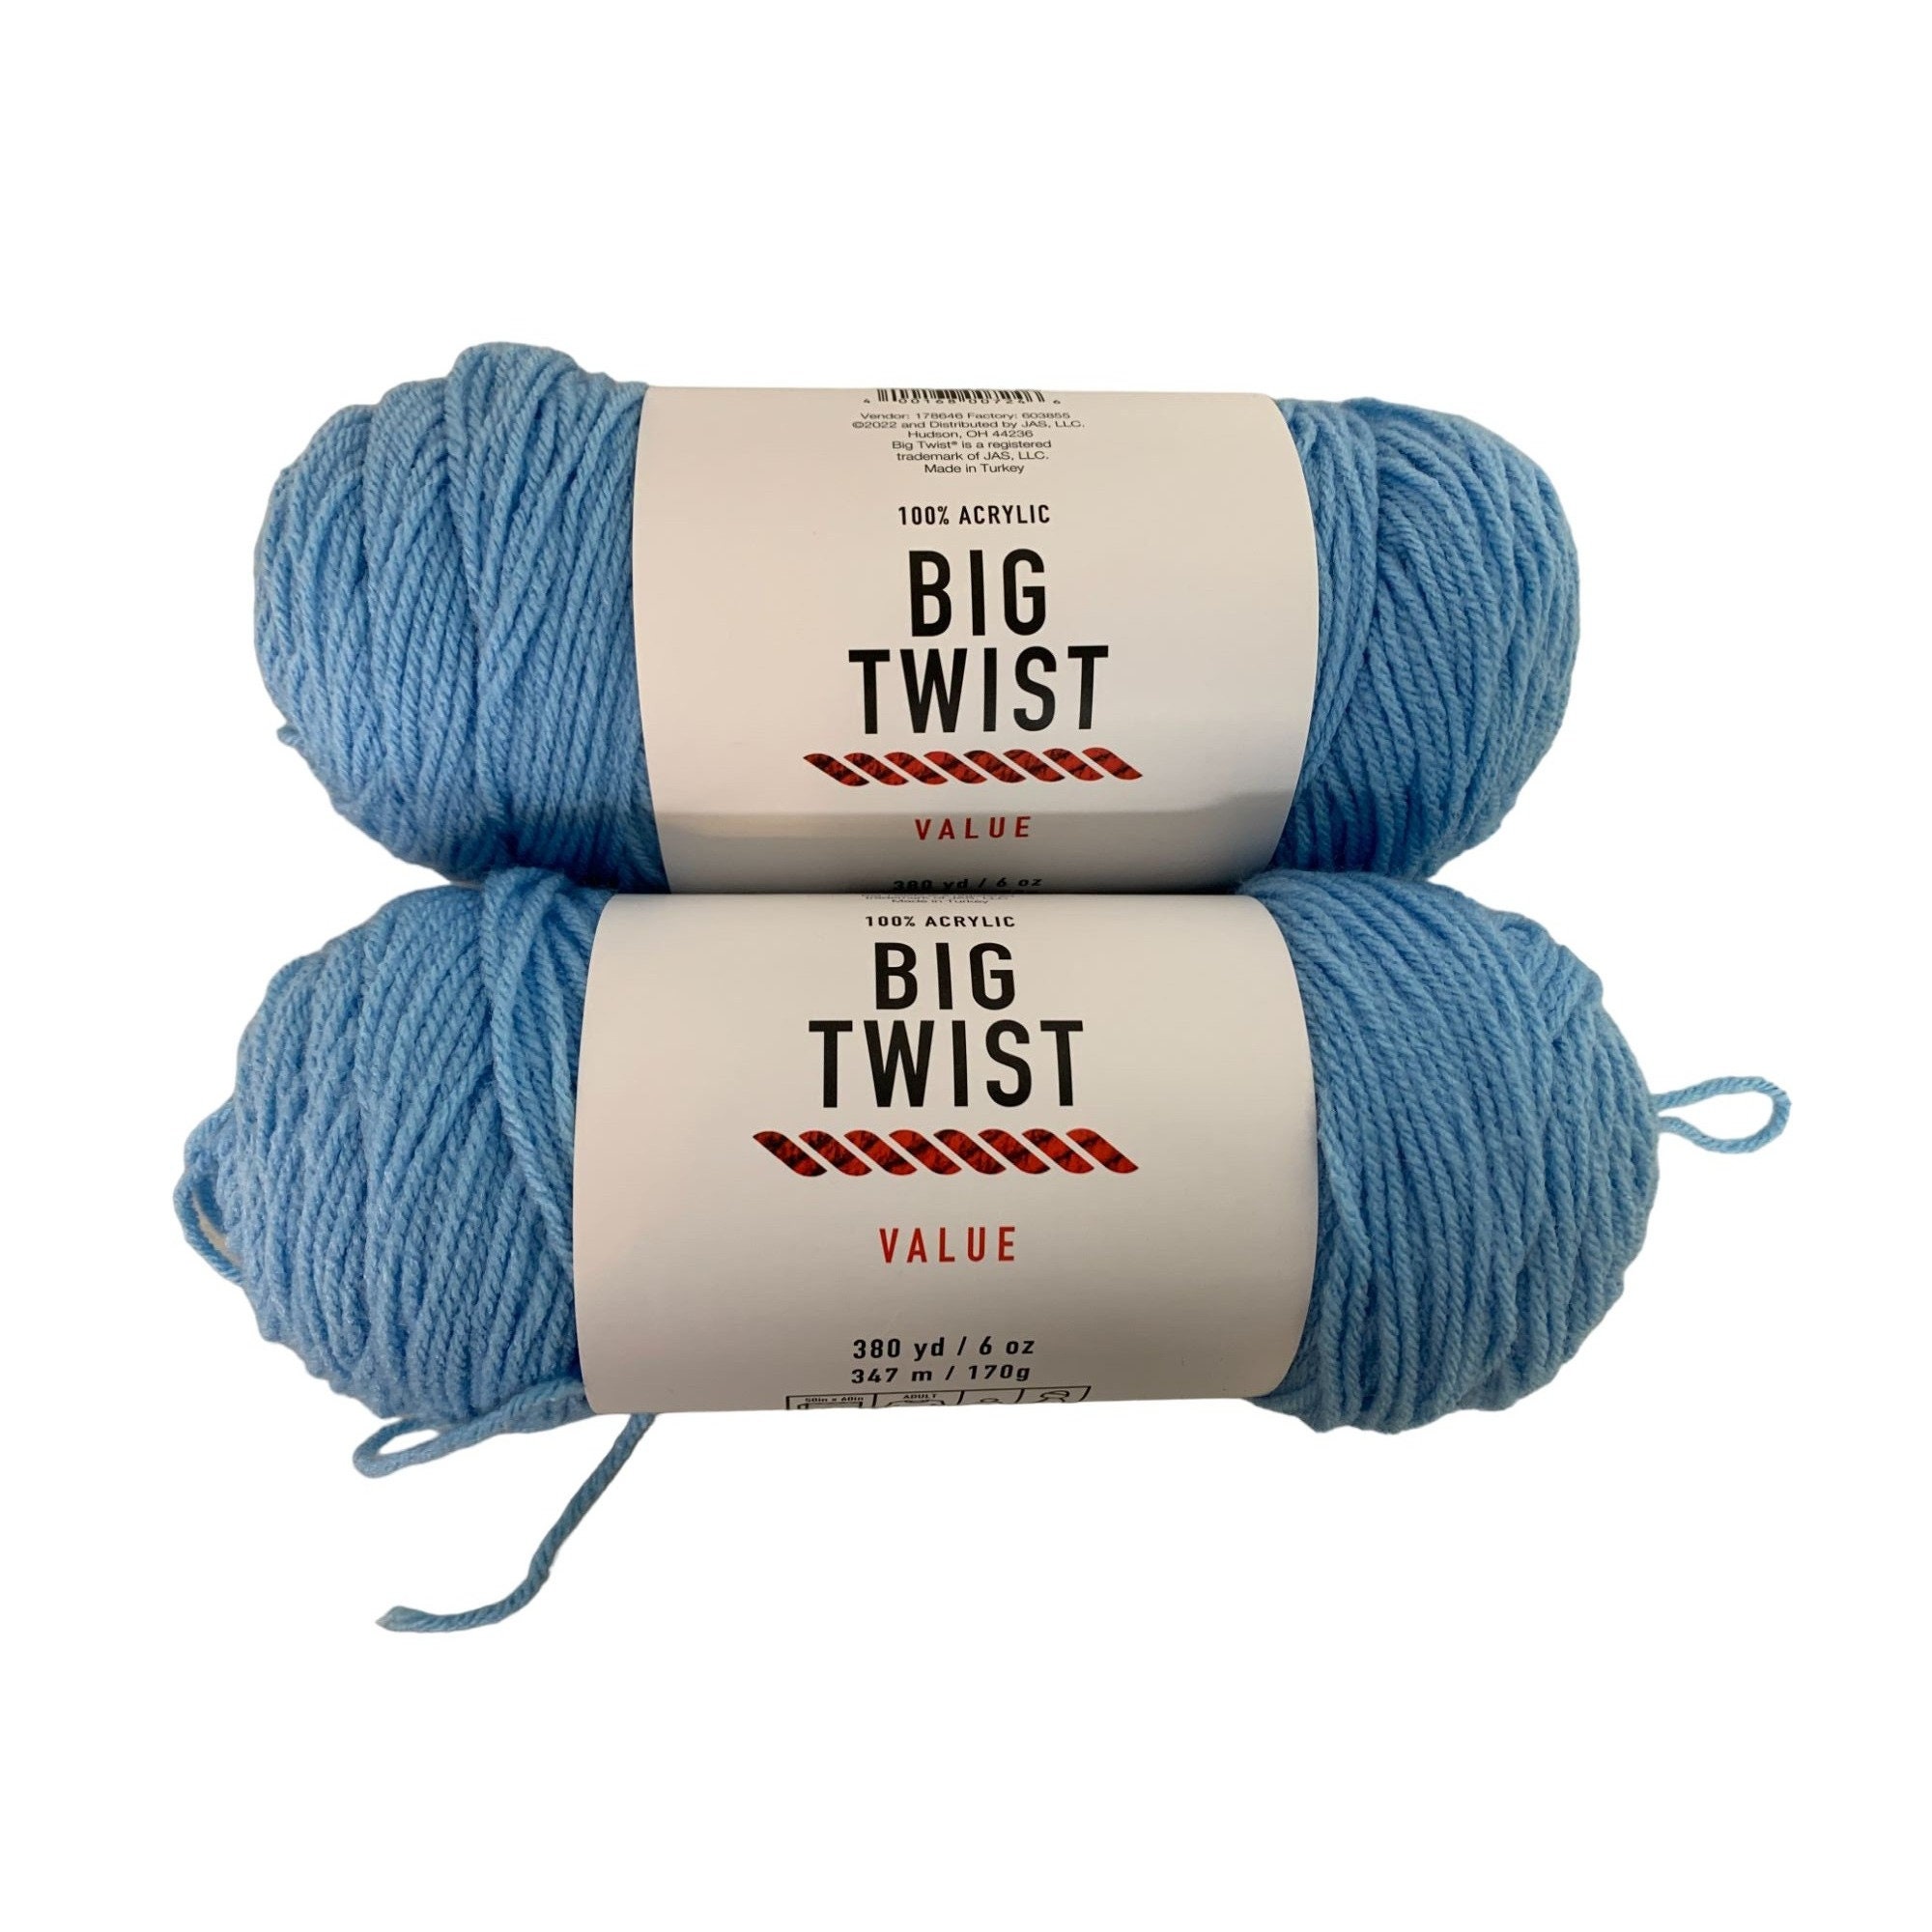 Big Twist 4.3oz Print Medium Weight Acrylic Value Worsted Yarn - Speckle Blues - Big Twist Yarn - Yarn & Needlecrafts